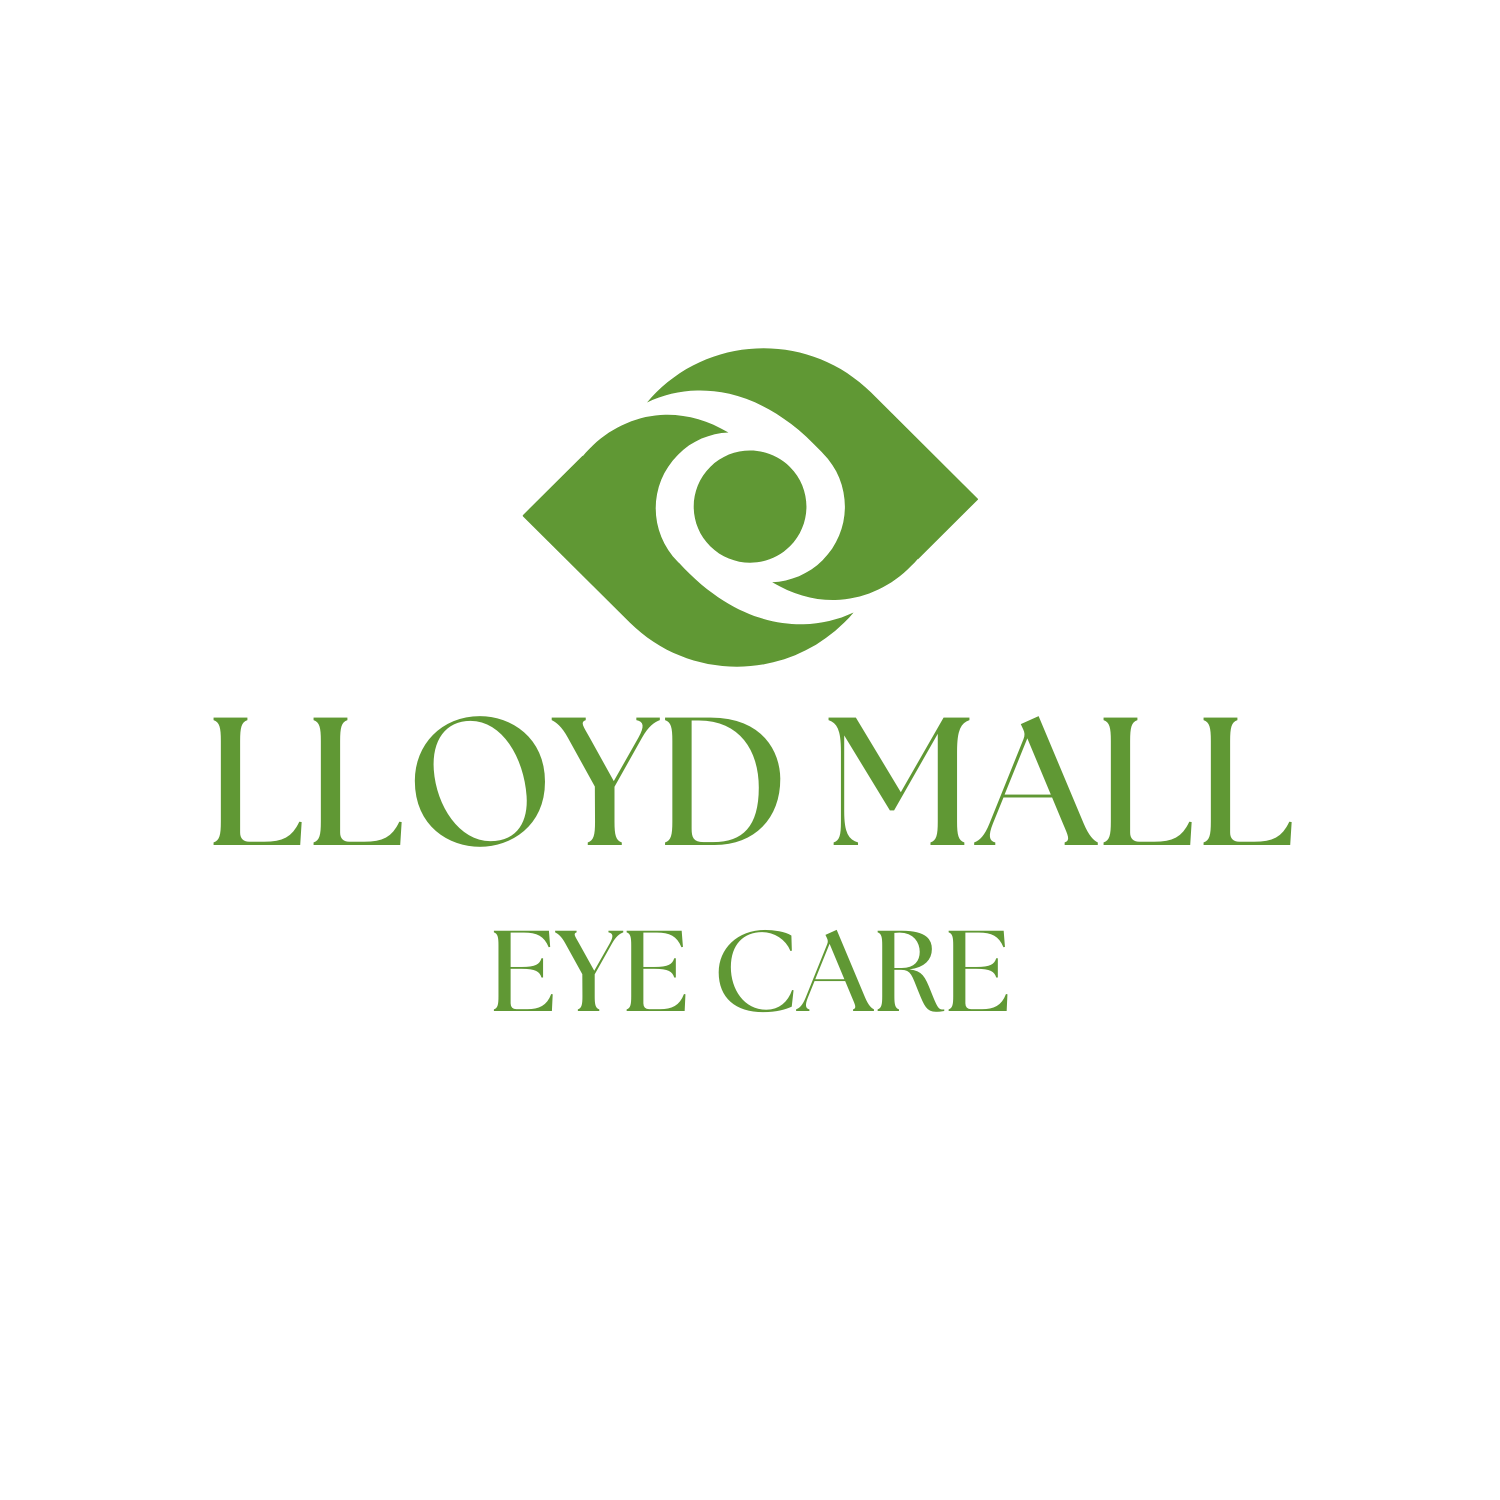 Lloyd Mall Eye Care